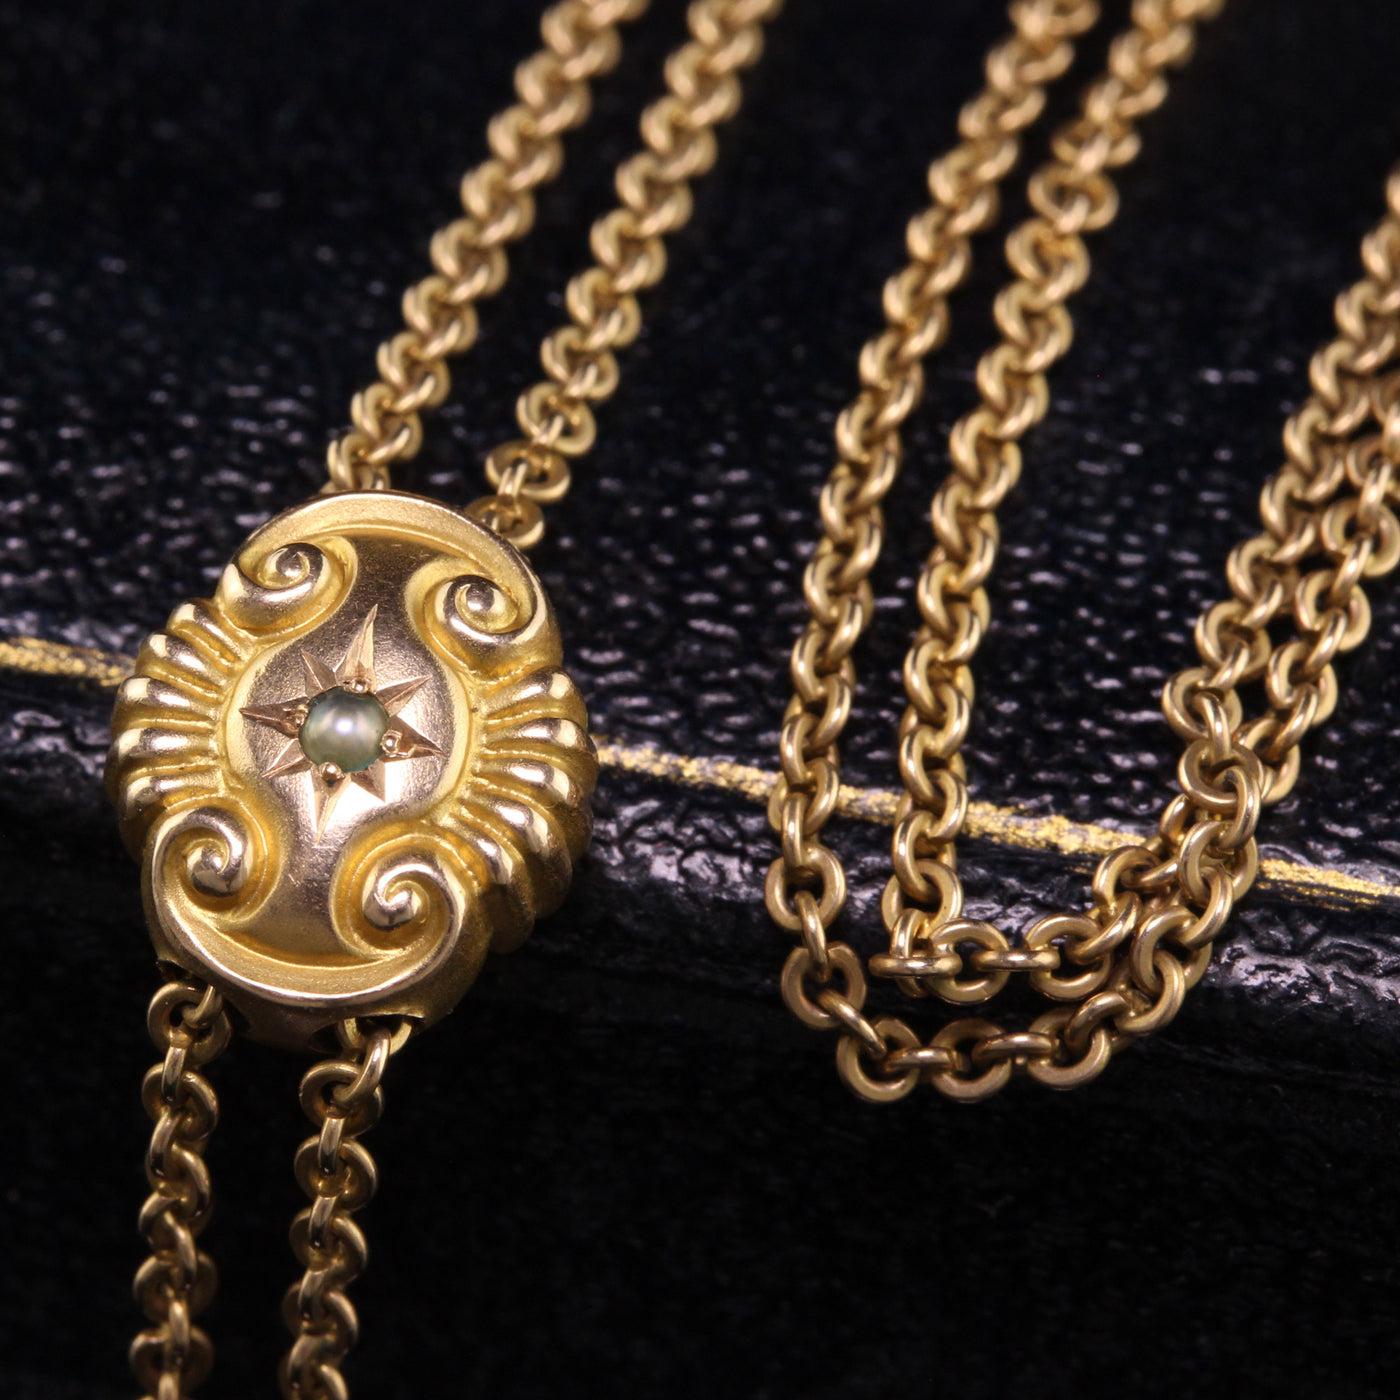 Antique Heavy Curb Link Necklace in Solid 9ct Rose Gold - Antique And  Vintage Elegance Online Australia Melbourne Sydney